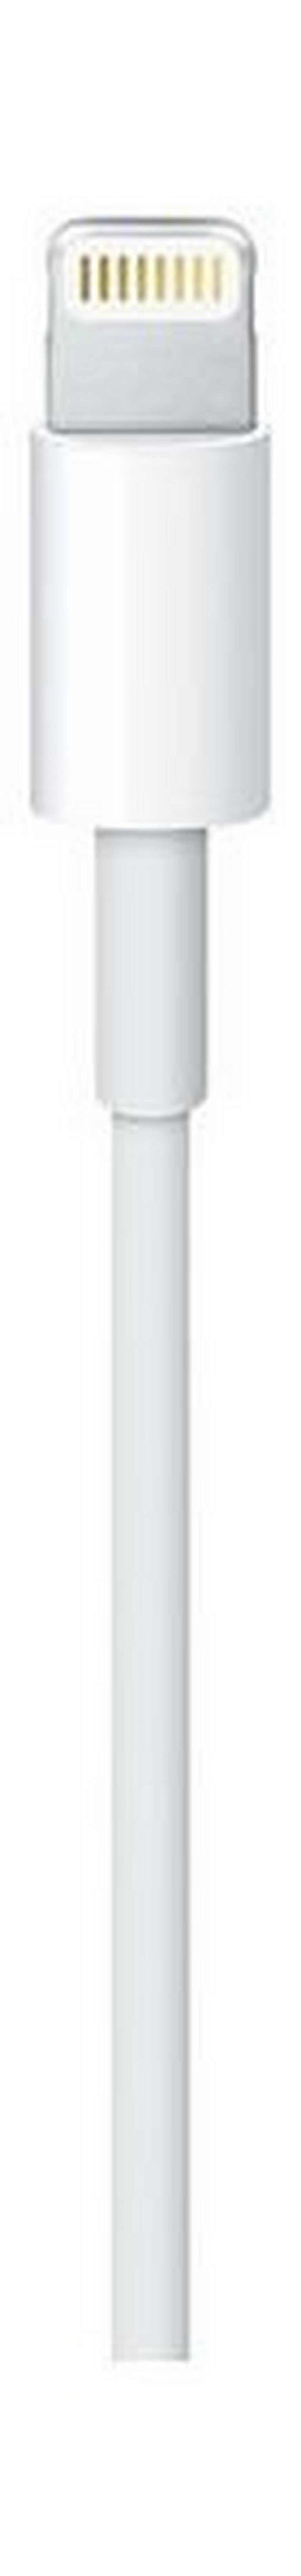 كابل لايتنينج يو إس بي بطول ٠.٥ متر من أبل – أبيض (ME291AM/A)